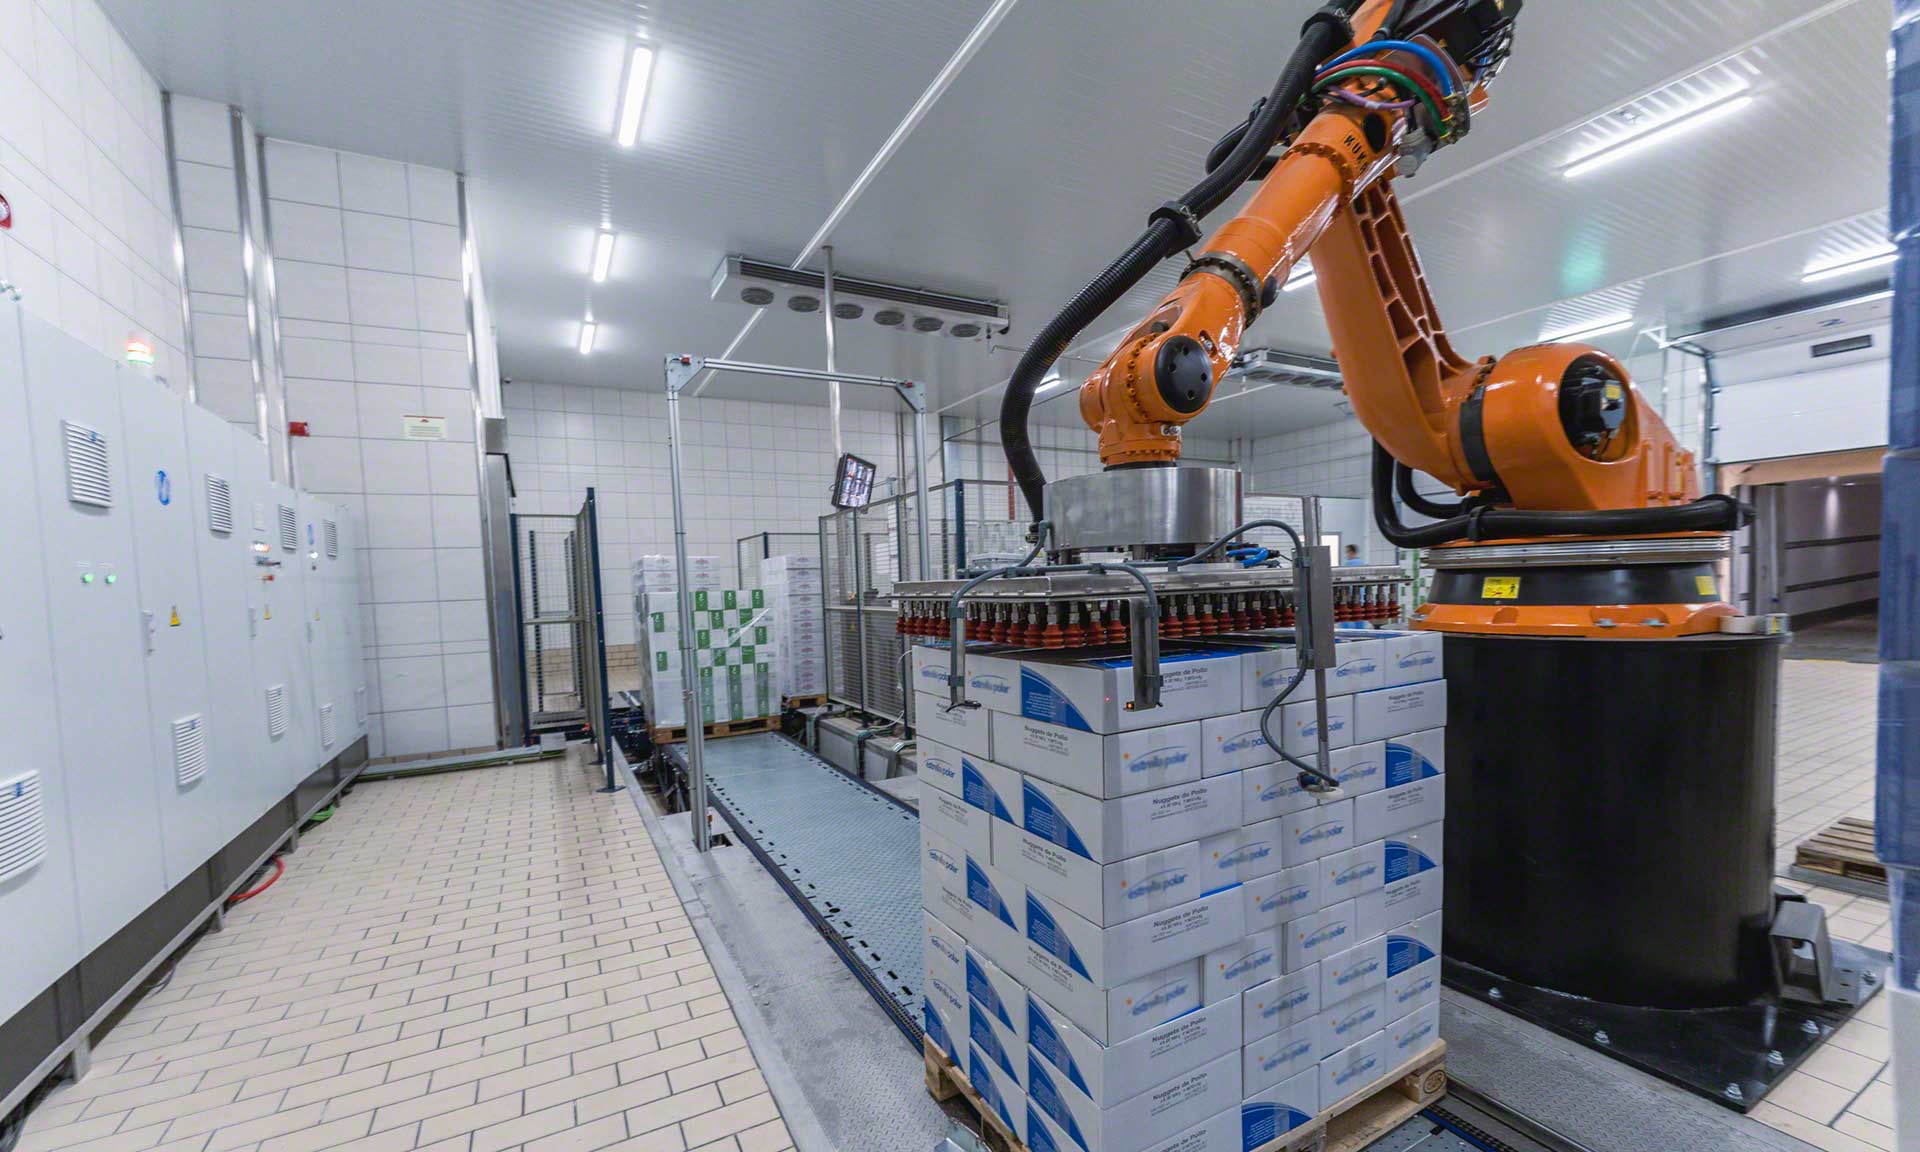 Robots de almacén: tecnología que automatiza la logística